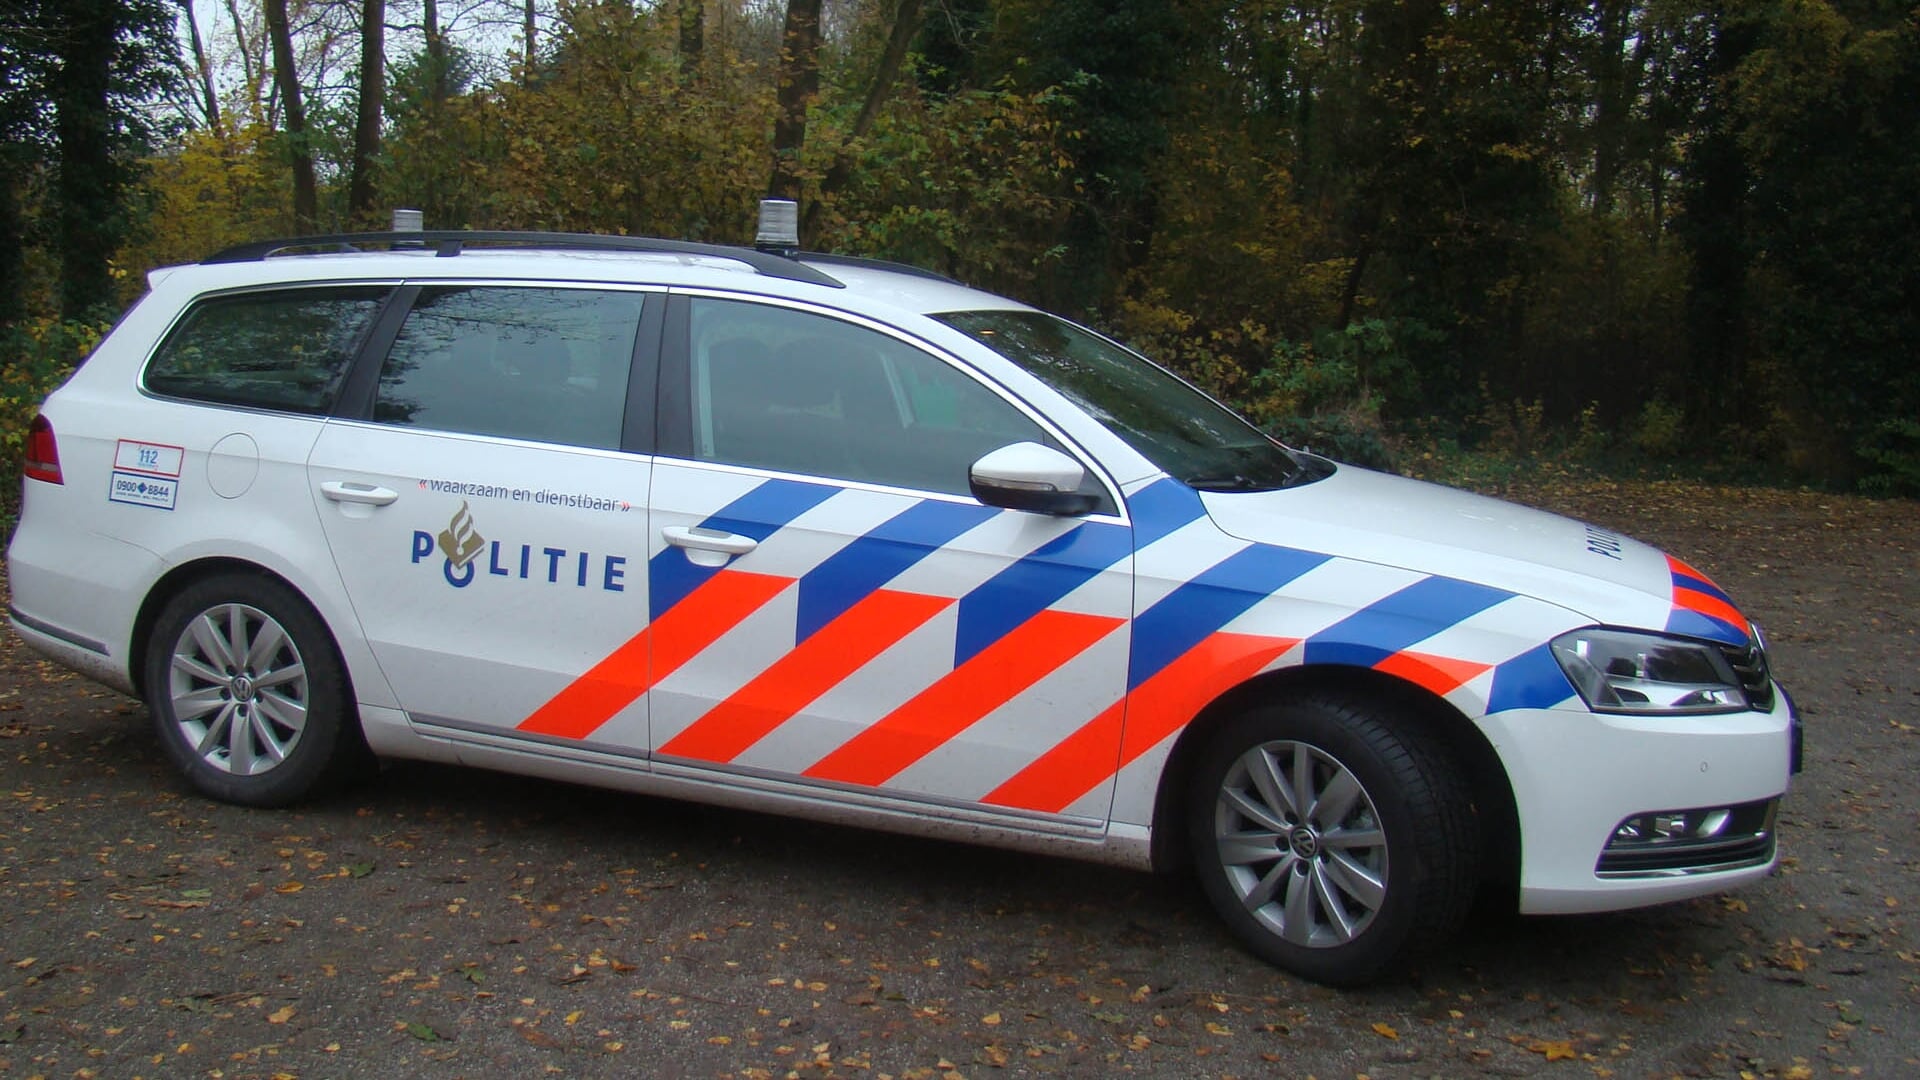 Volgens burgemeester Hoogendoorn zou er in Midden-Groningen best wat meer waakzame politie mogen zijn.